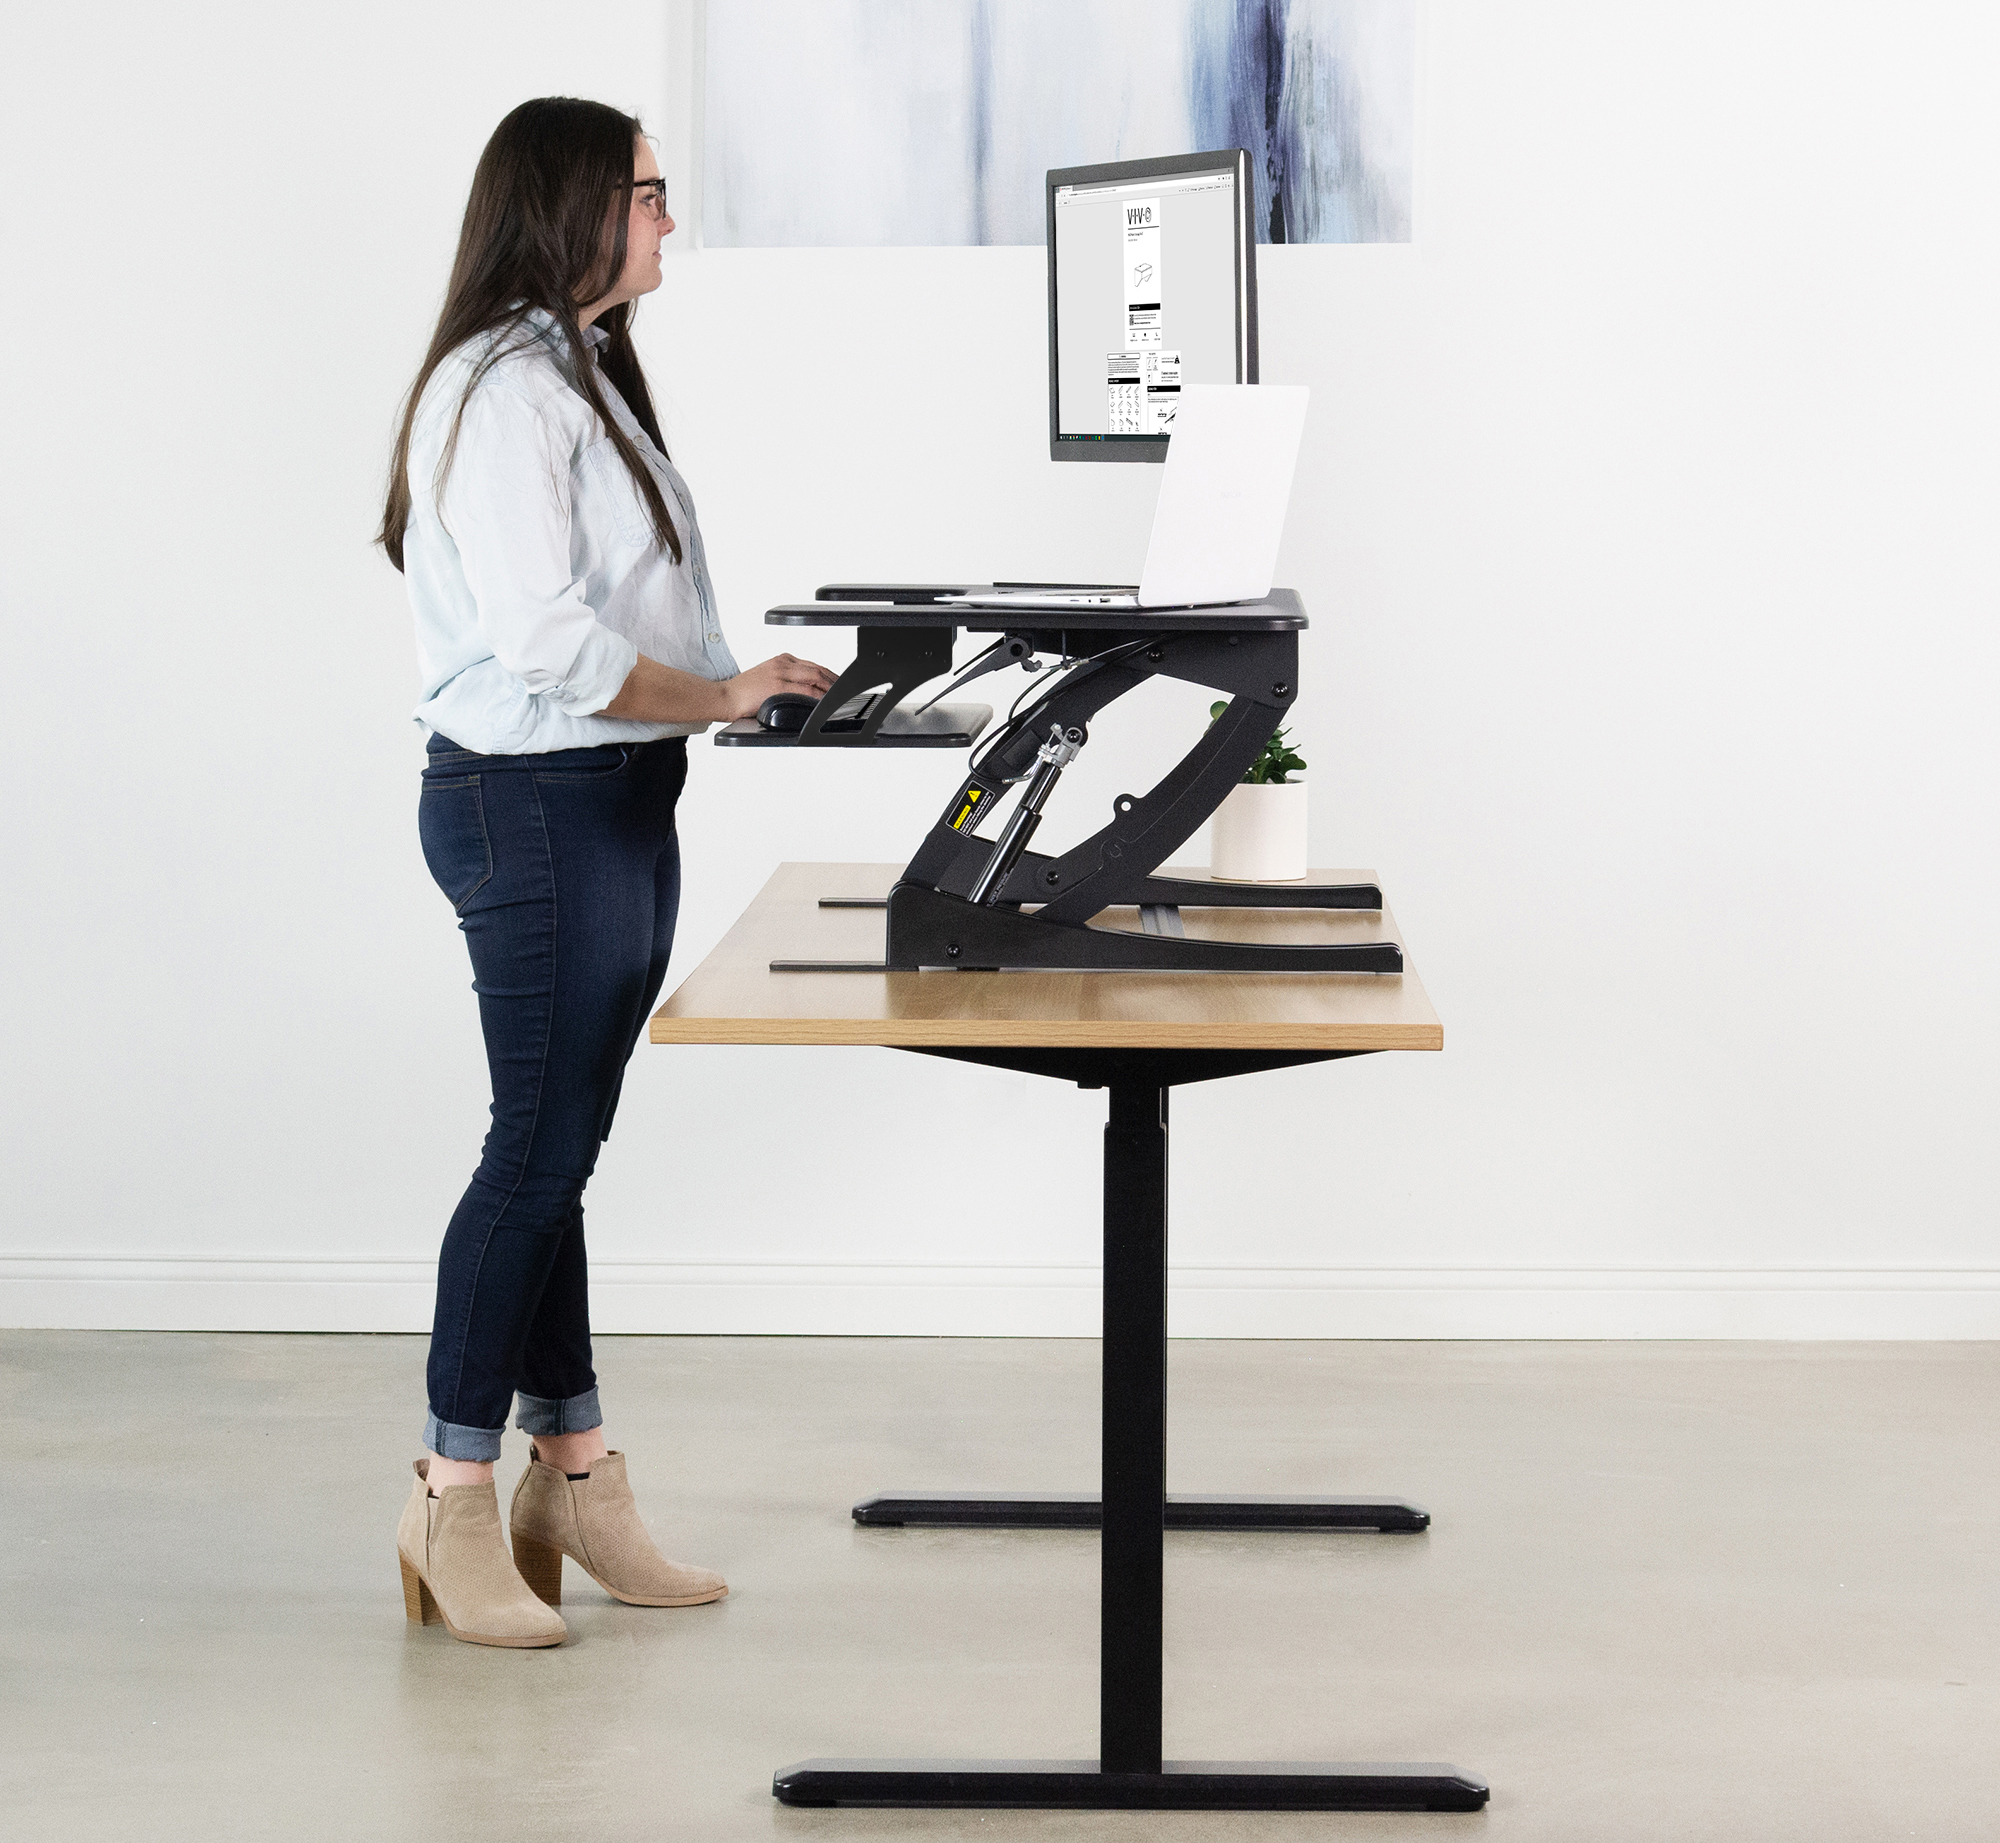 DESK-V000VD VIVO Dark Wood 36” Stand Up Desk Converter Workstation Quick Sit to Stand Tabletop Monitor Riser